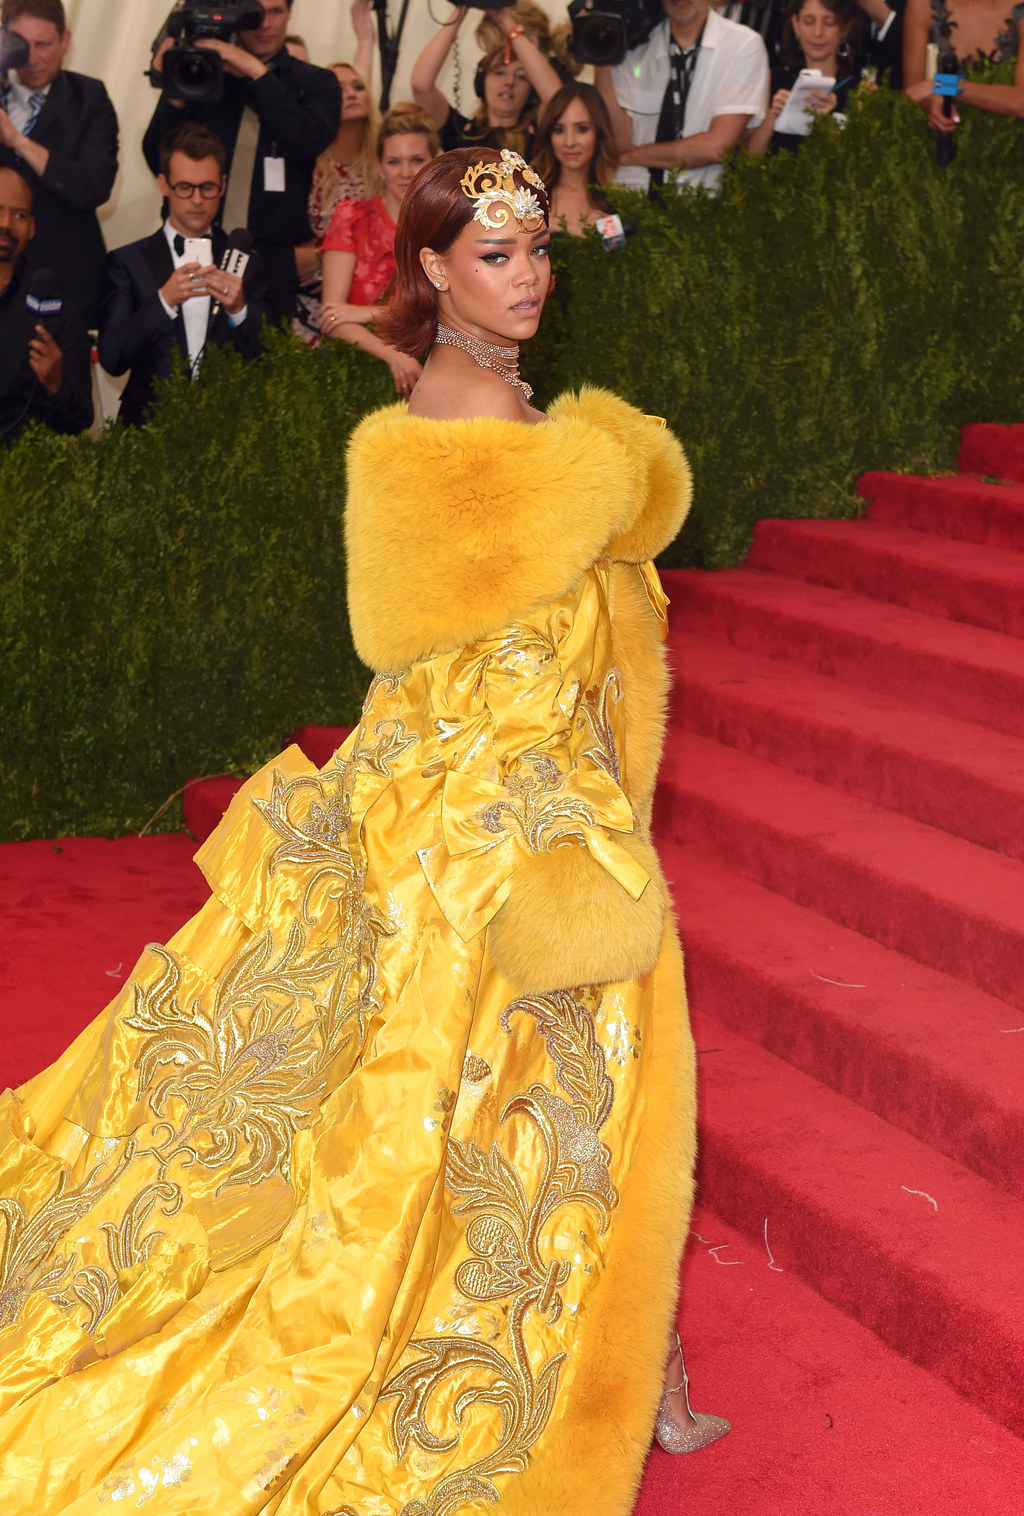 19 Stunning Photos Of Rihanna At The Met Ball